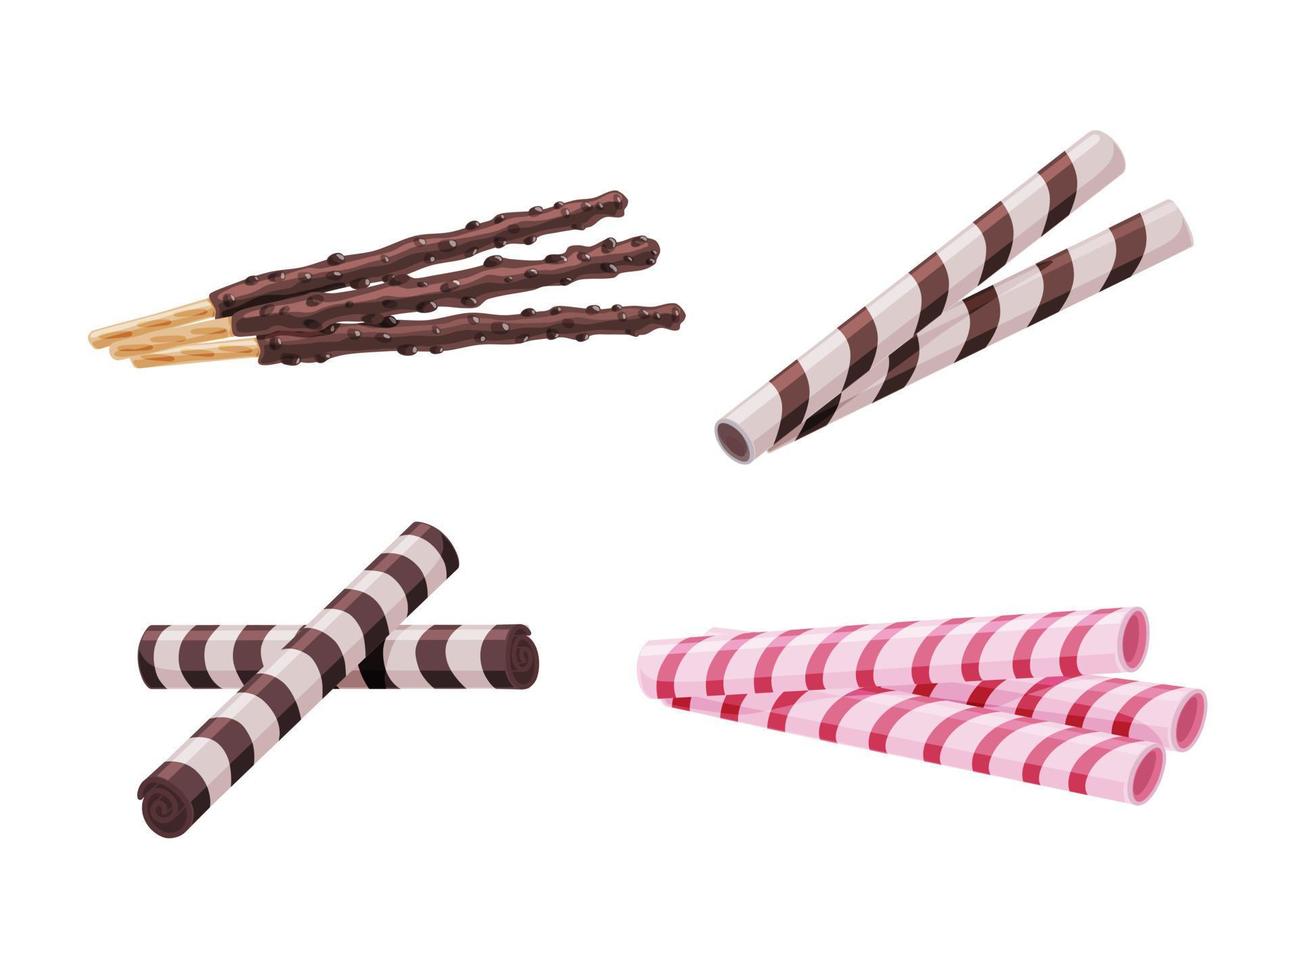 verschillende koekjeswafelstokken met chocolade die op een witte geïsoleerde achtergrond worden geplaatst. heerlijk toetje. vector cartoon illustratie